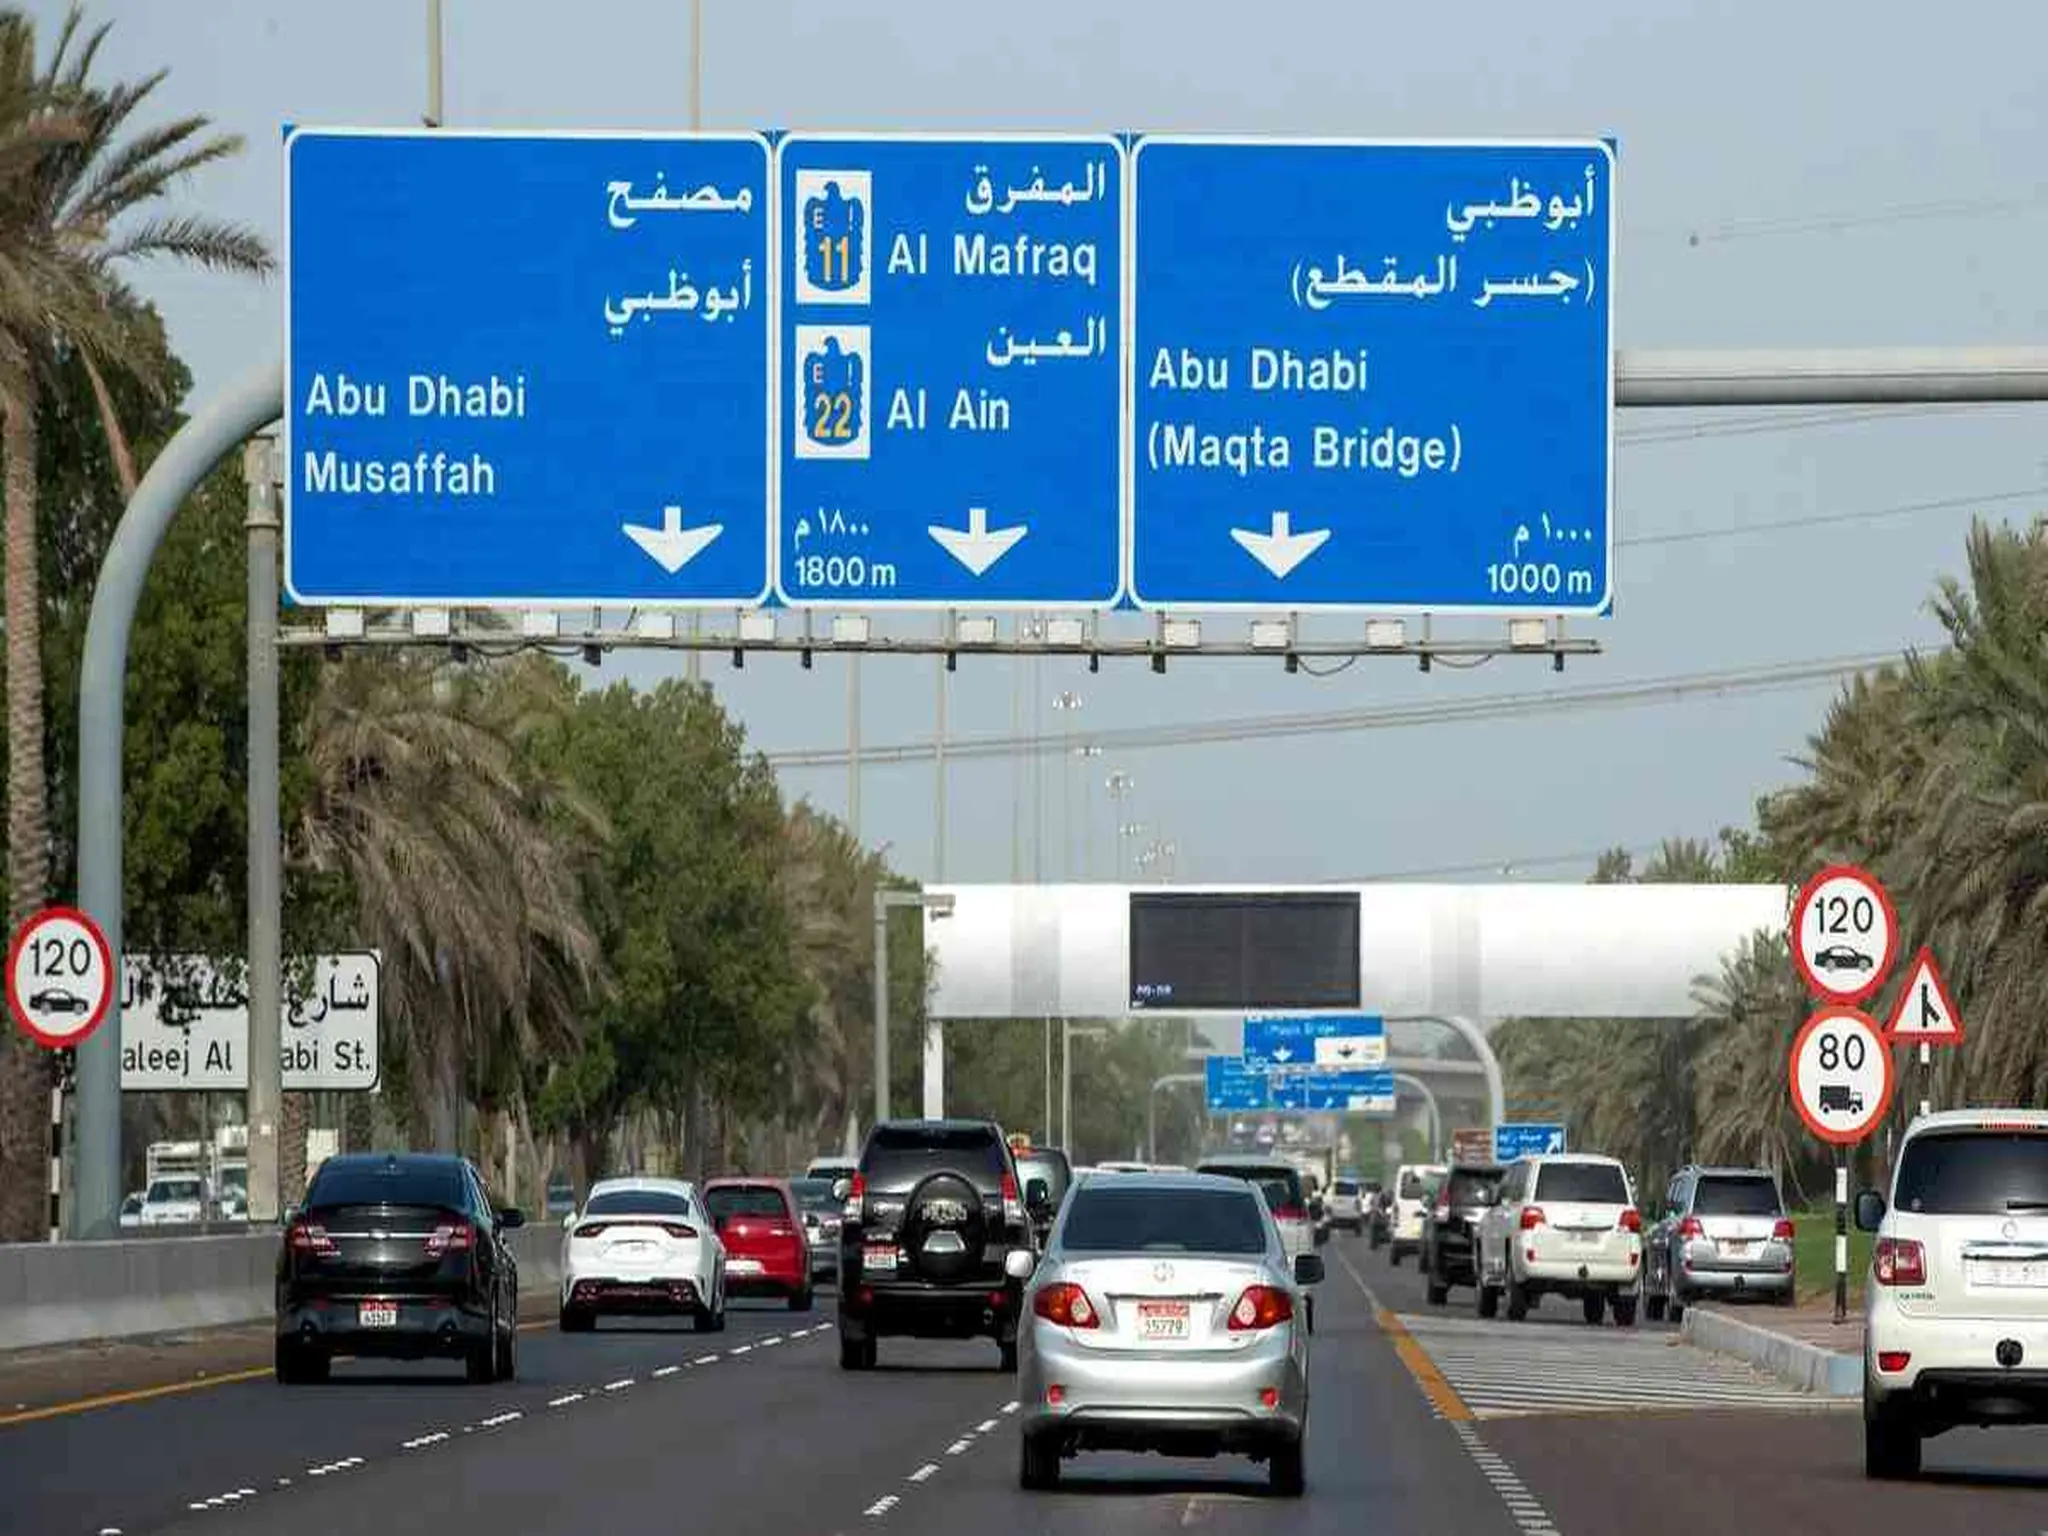 الشرطة تعلن حظر دخول بعض المركبات إلى أبو ظبي مؤقتا